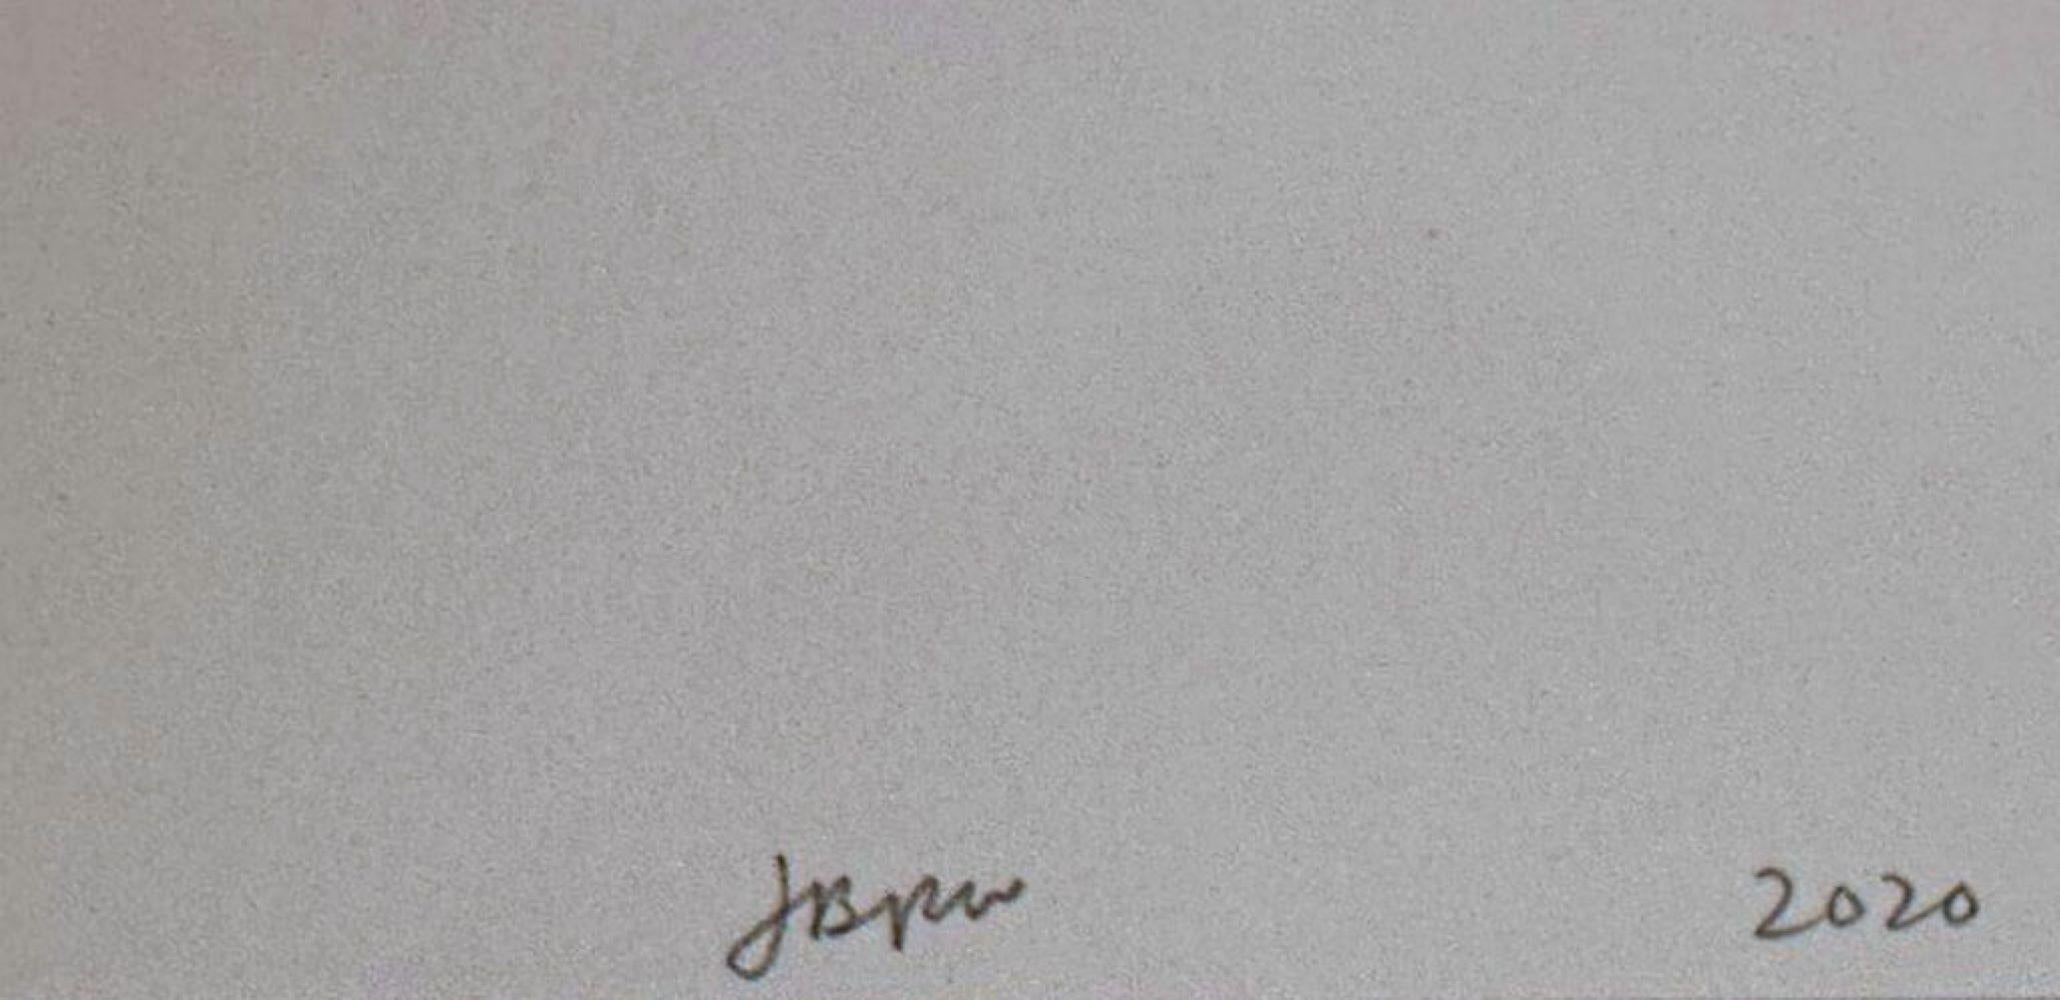 Jonas Wood
Bromelie, 2020
13 Color Siebdruck in Farben, auf steigendem Museumskarton, vollrandig
Signiert, datiert und nummeriert 135/200 in Bleistift auf der Vorderseite; mit Blindstempel des Verlegers
28 × 23 Zoll
Ungerahmt
Provenienz
Printed